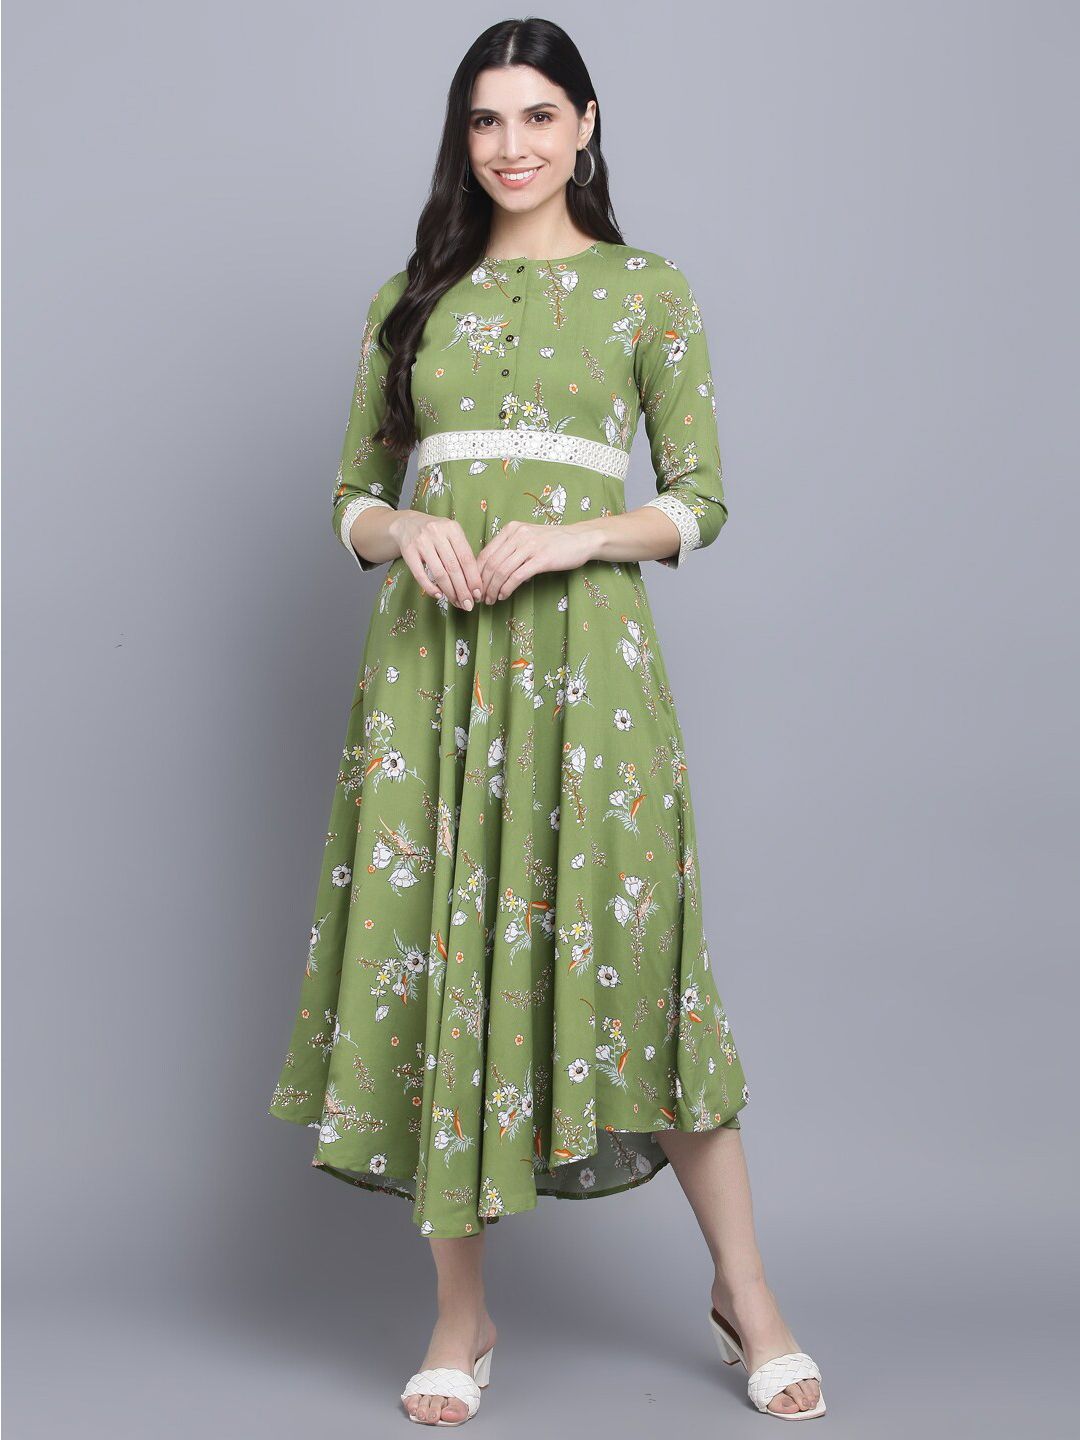 Myshka Green Floral Midi Dress Price in India